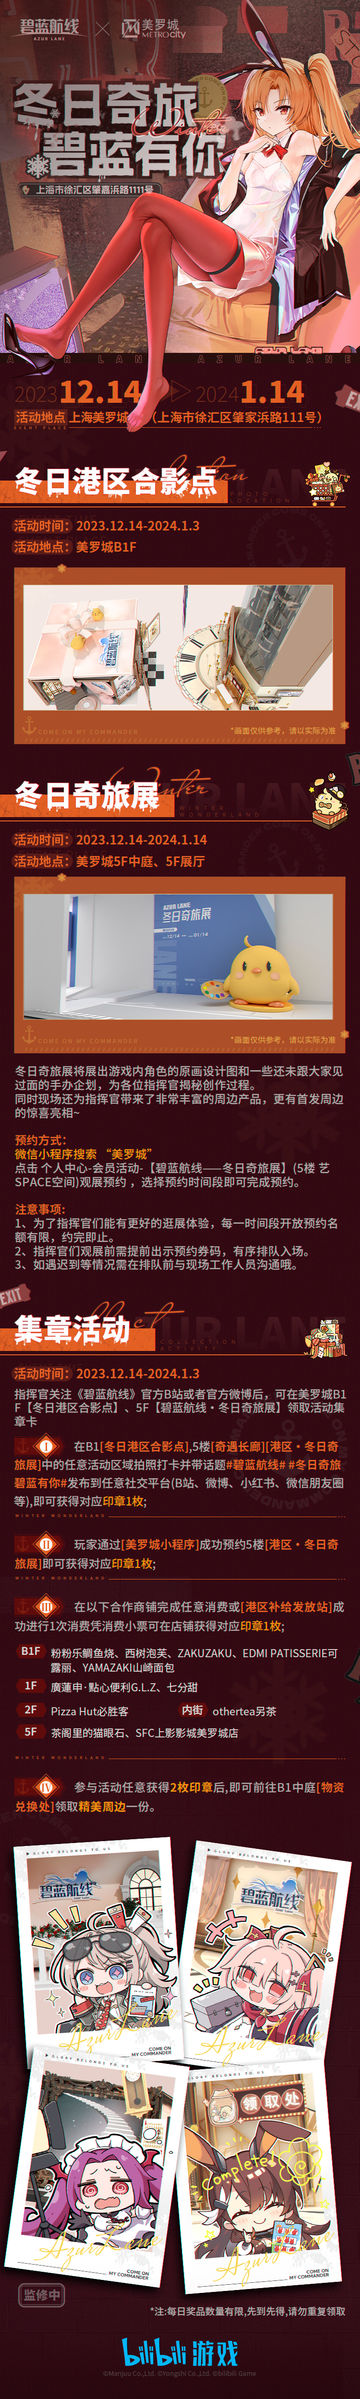 《碧蓝航线》 x 美罗城 冬日奇旅展厅预约正式开启啦~！